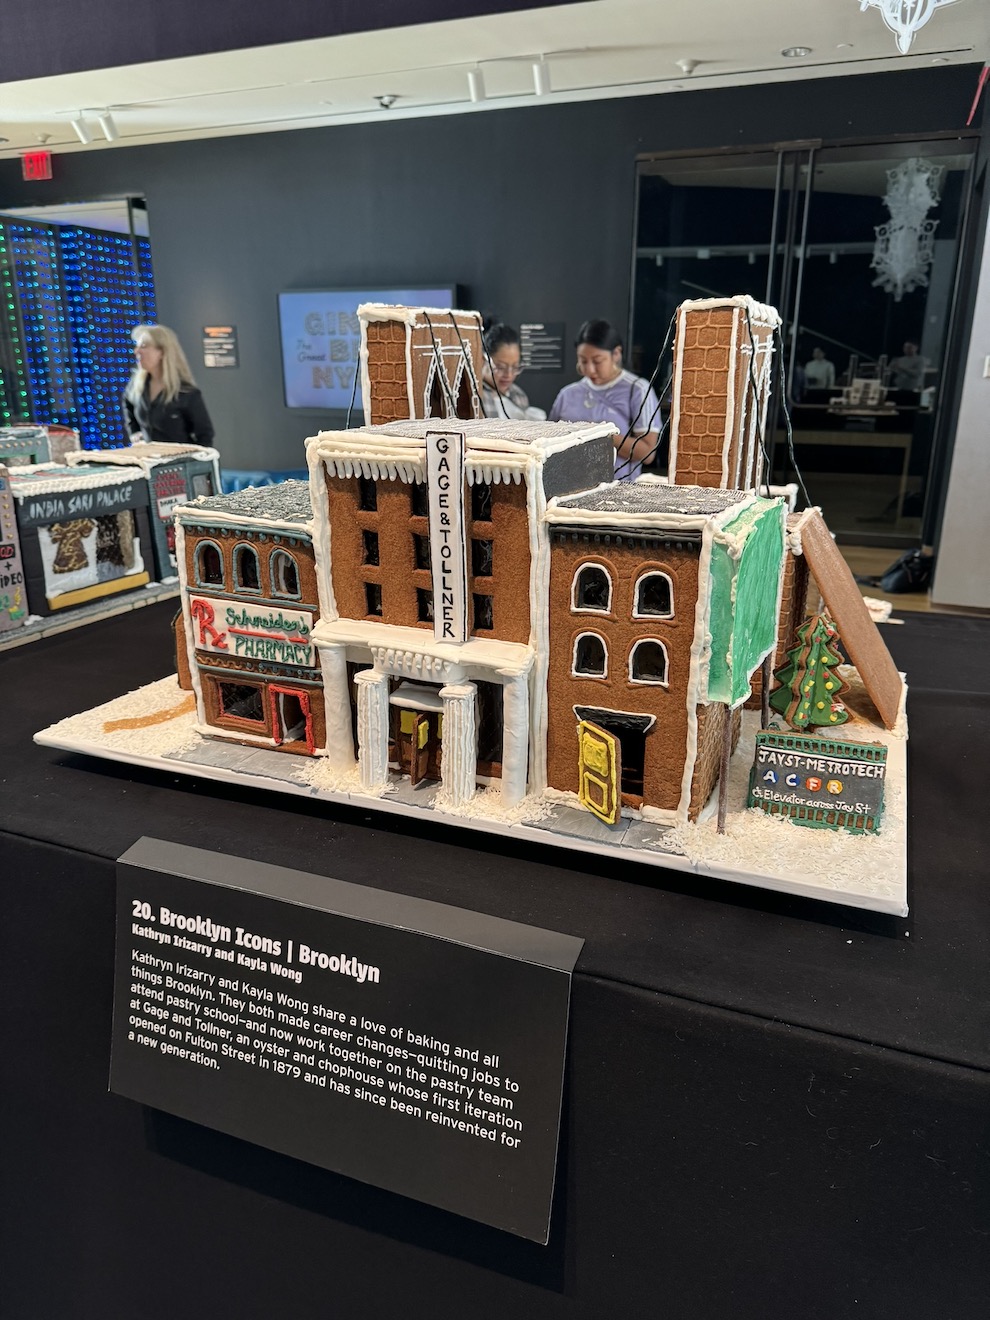 2023 年の「Gingerbread NYC: Great Borough Bake-Off」のエントリーの XNUMX つである「Brooklyn Icons」の完成した展示の様子。